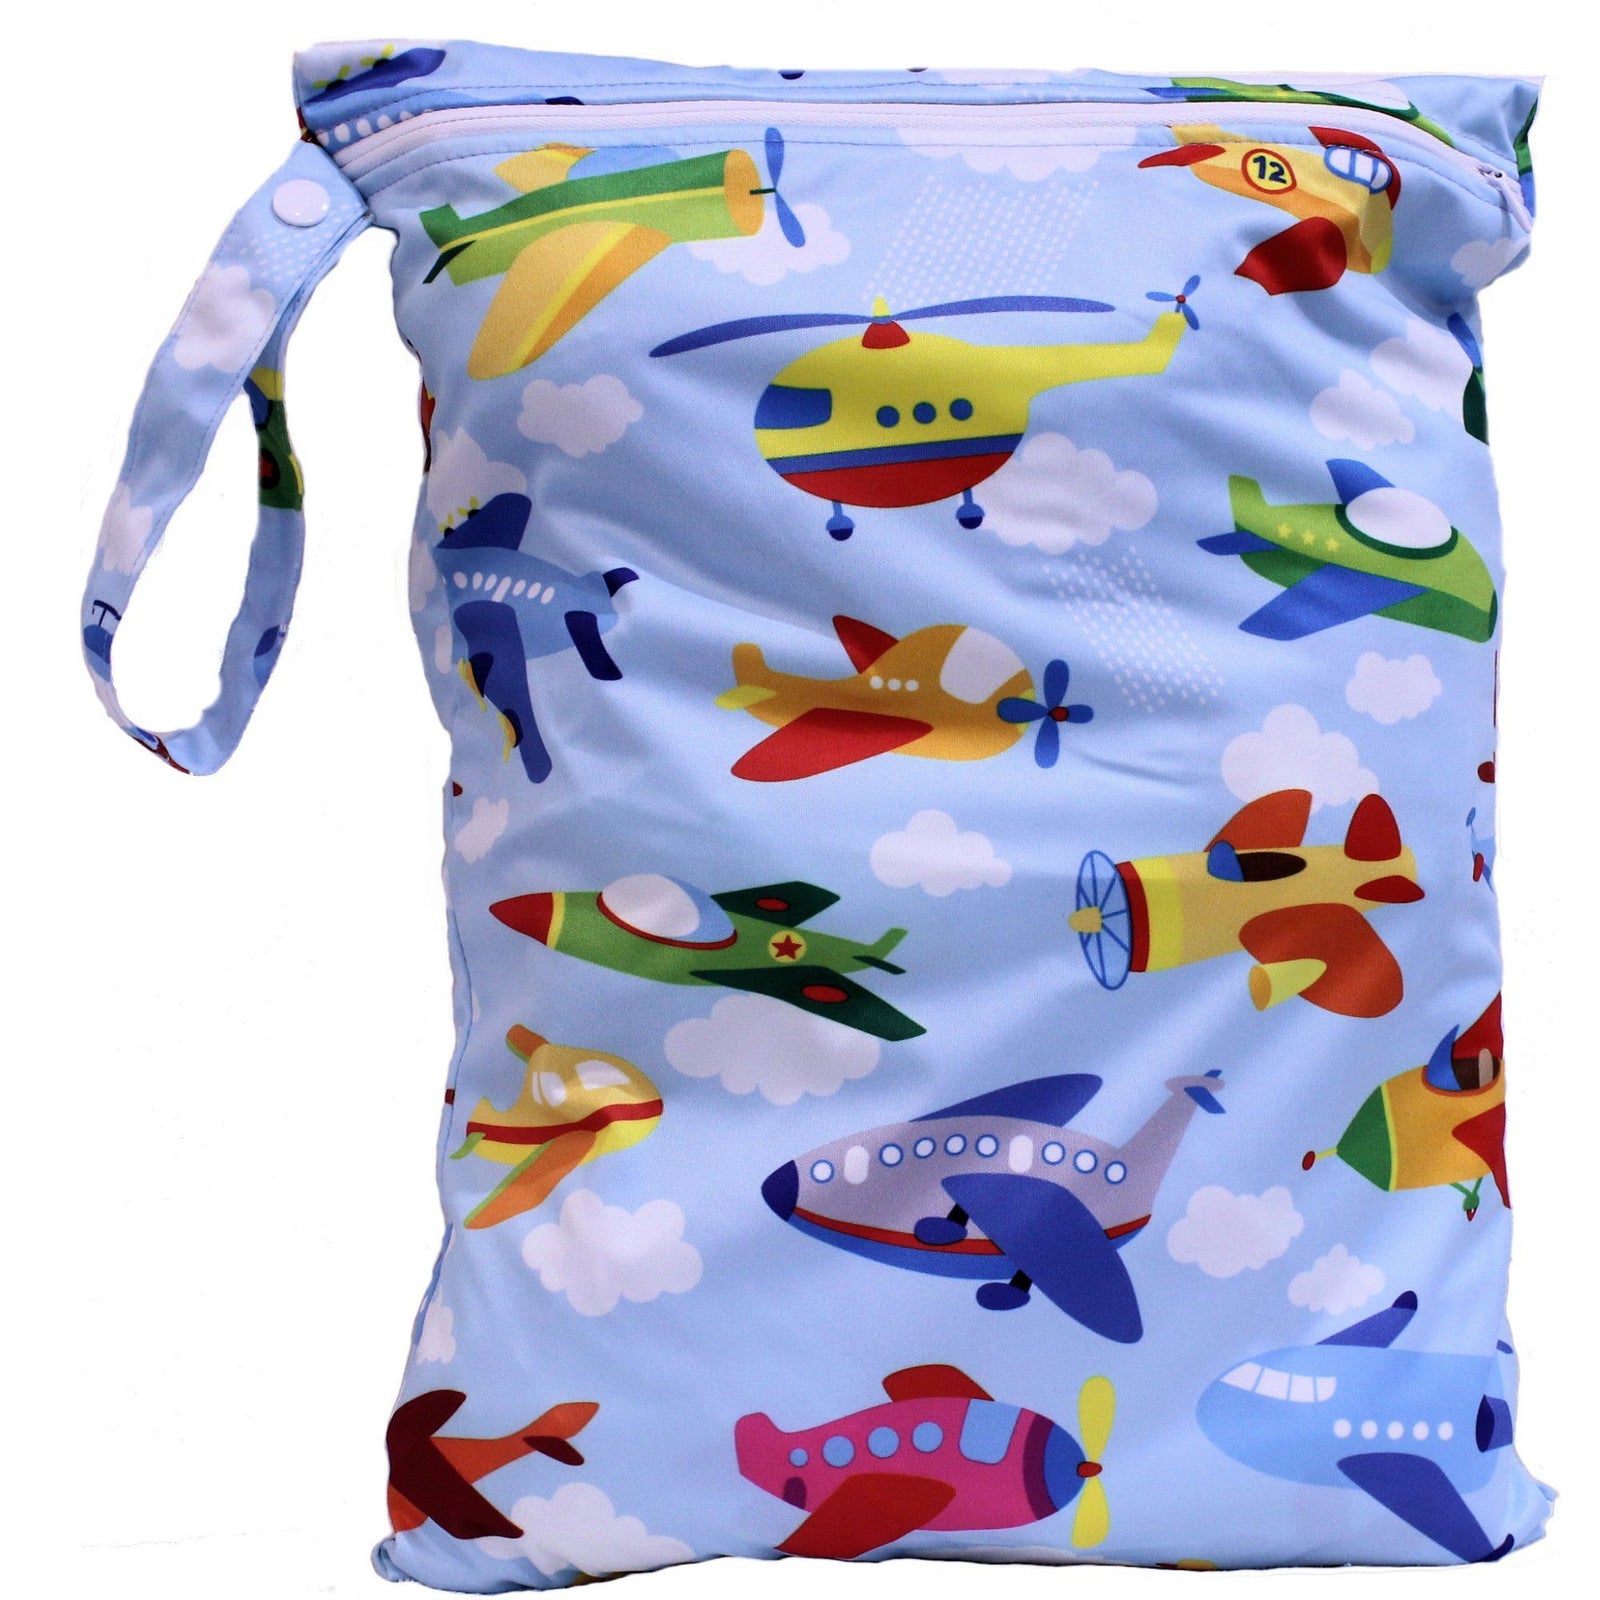 Wet Bathing Suit Bag: Two Piece Mafia Travel Bag, Waterproof Swimsuit Bag,  Wet Swim Suit Bag, Wet Bikini Bag 